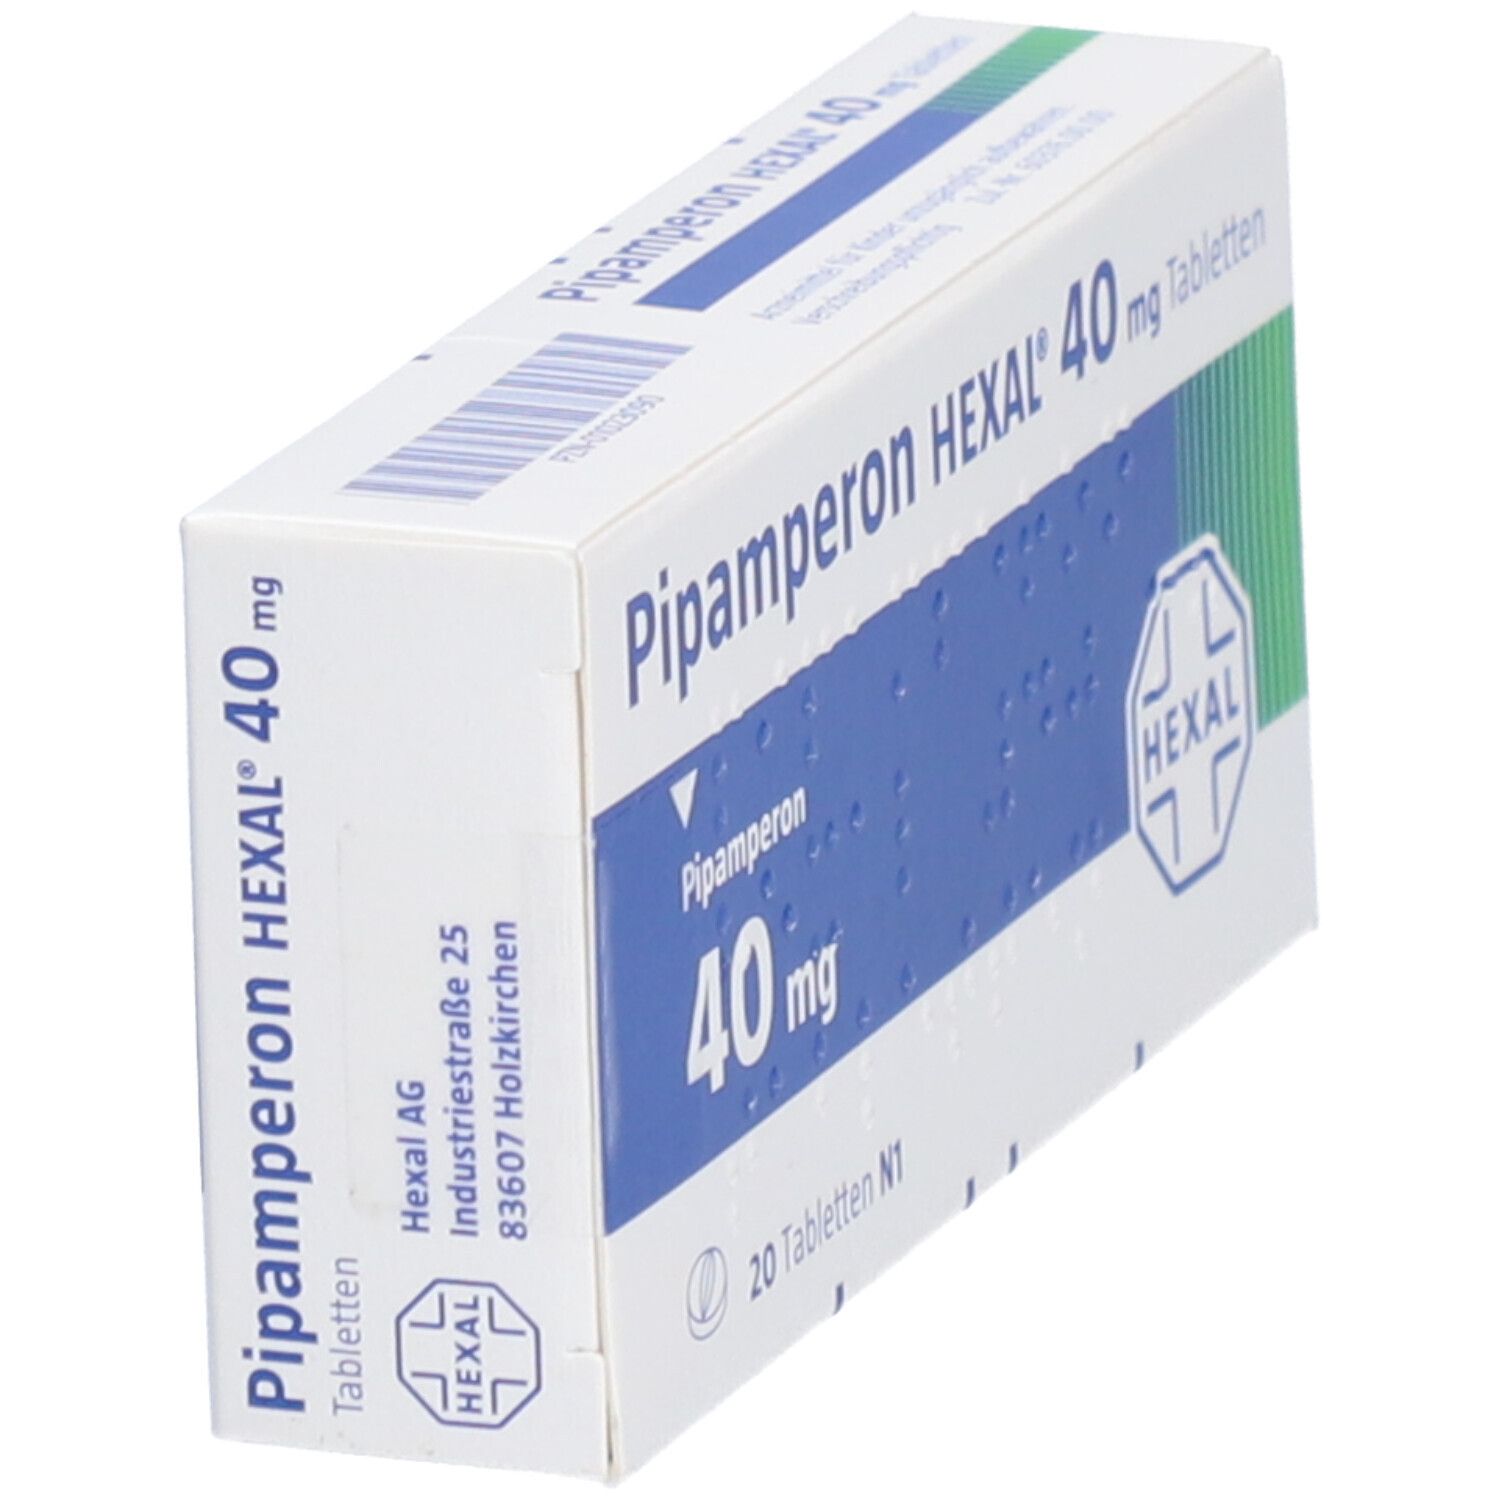 Pipamperon HEXAL® 40 mg